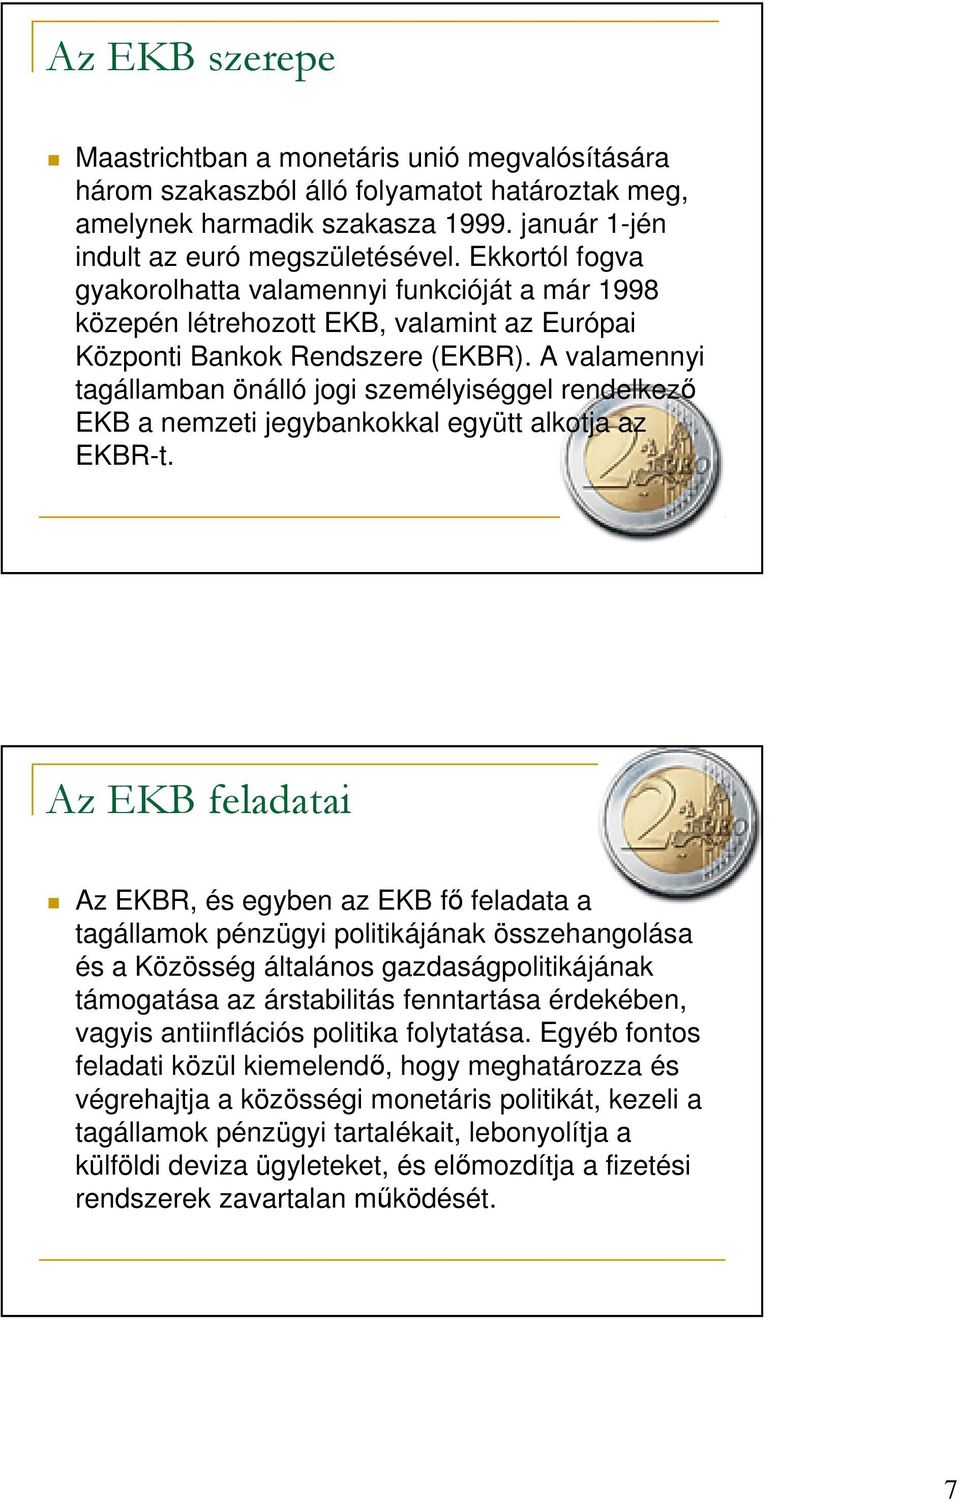 A valamennyi tagállamban önálló jogi személyiséggel rendelkezı EKB a nemzeti jegybankokkal együtt alkotja az EKBR-t.